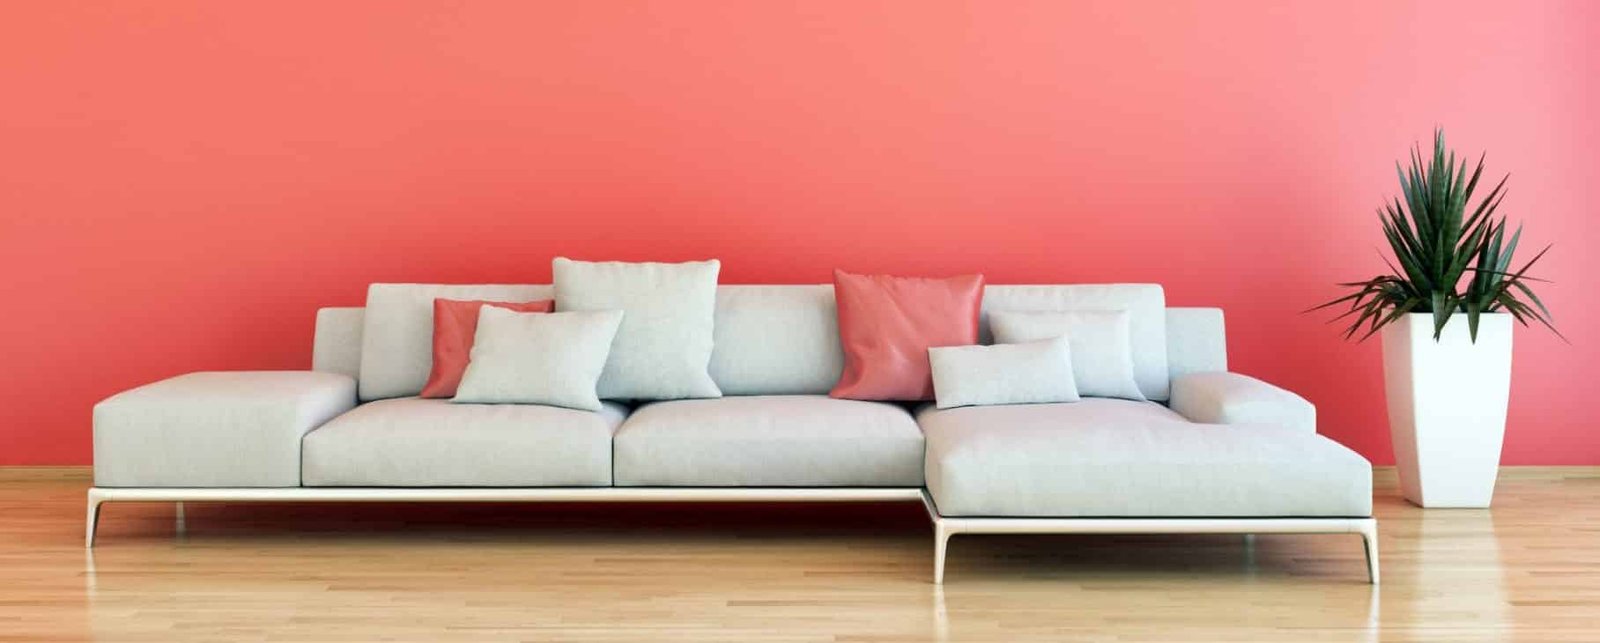 4 Design Tweaks to Brighten Up Your Home